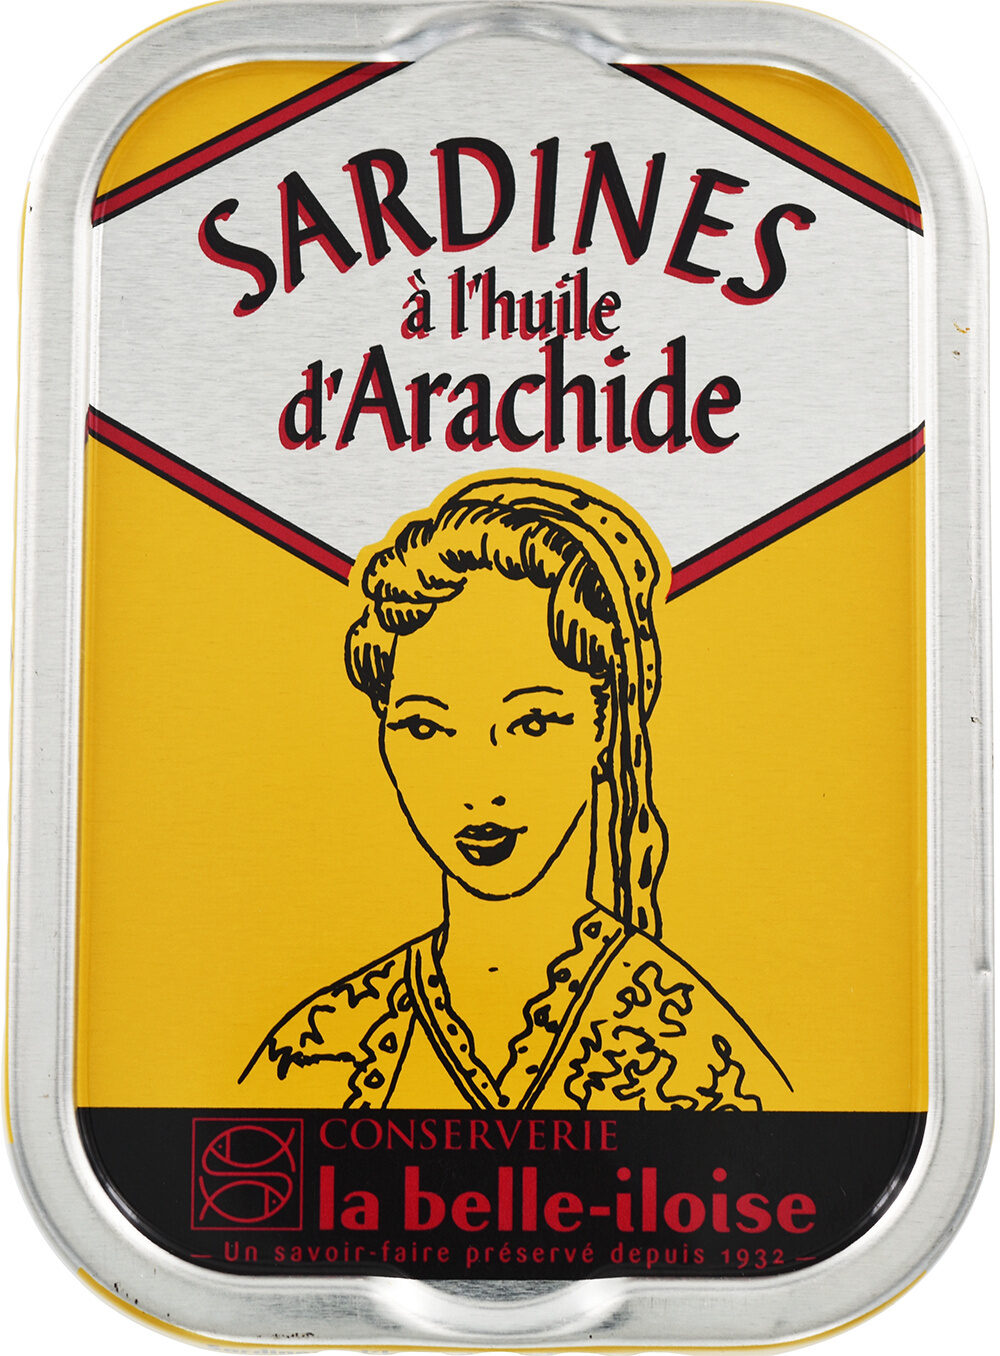 Sardines à l'huile d'arachide - Product - fr